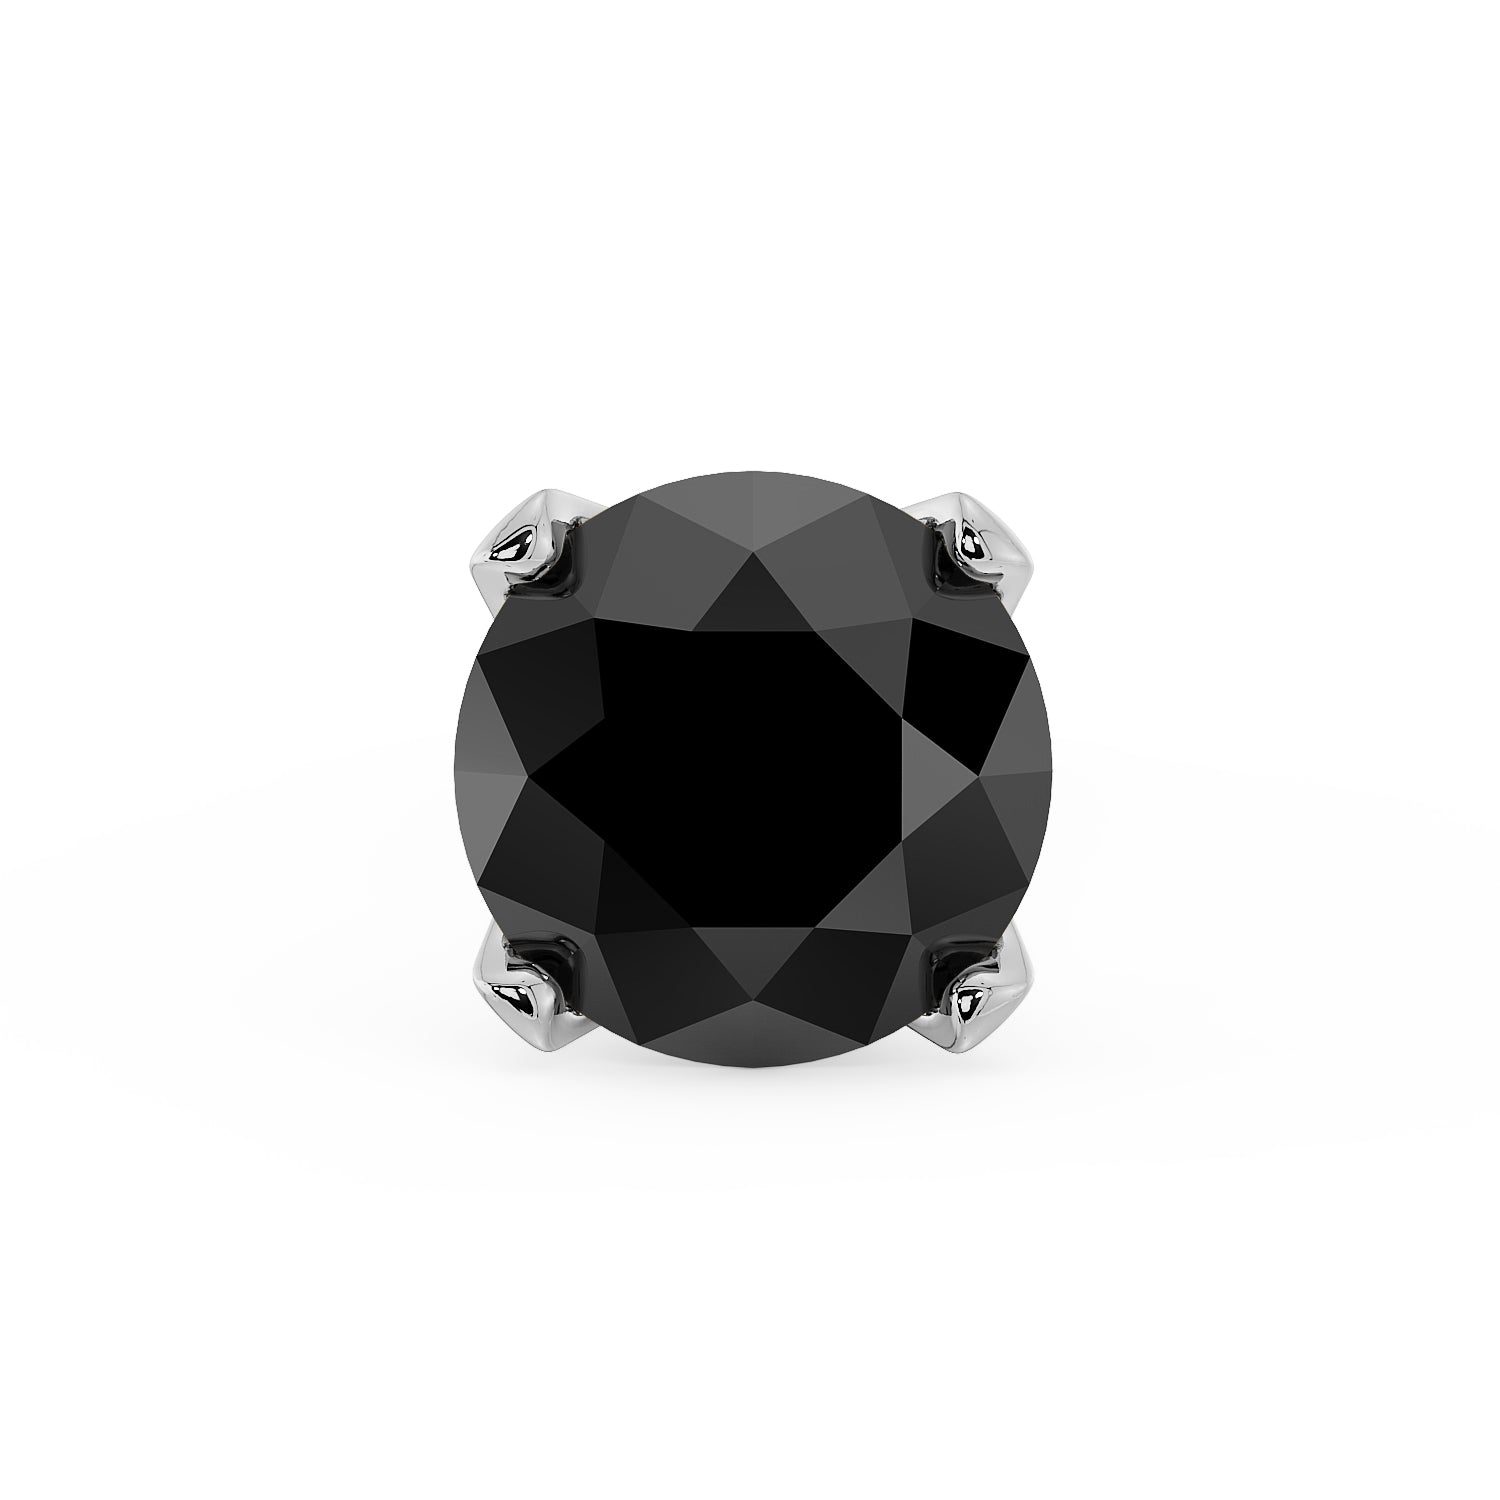 Diamond Nose Pin Design 2021 with Price | Gold Nose Pin studded with Dia...  | Diamond earrings design, Nose ring designs, Diamond